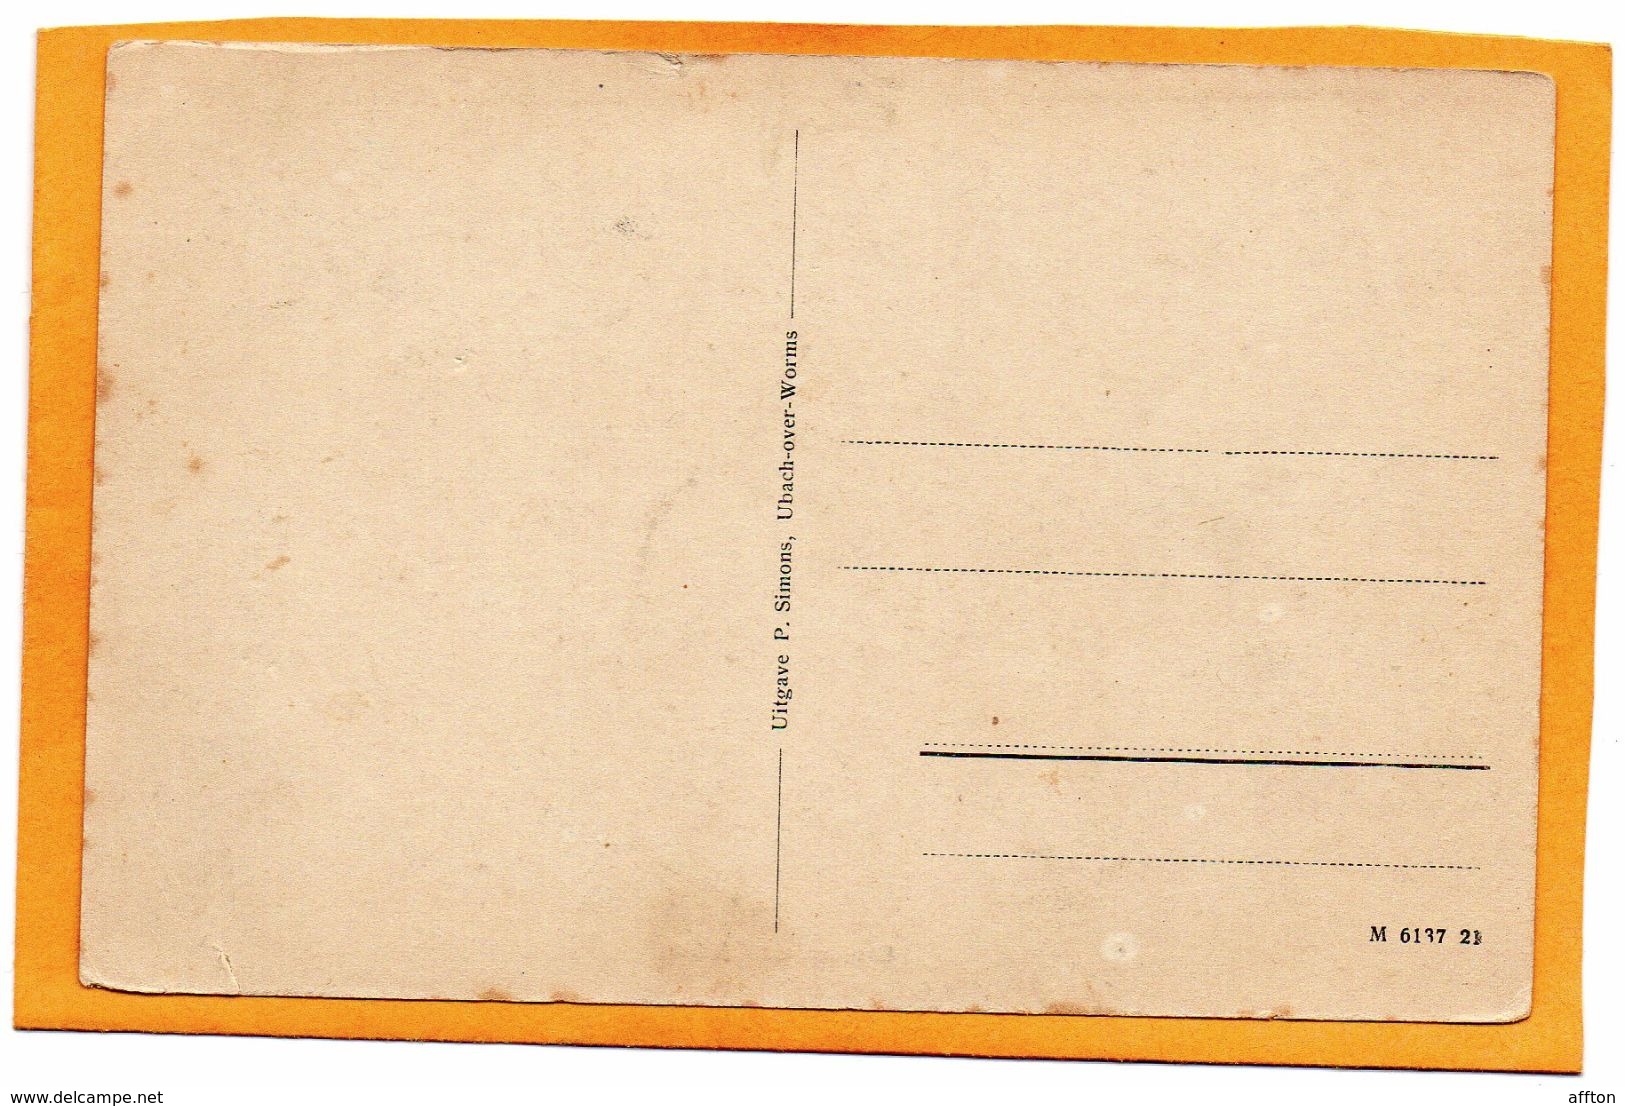 Groeten Uit Eijsden 1910 Postcard - Eijsden